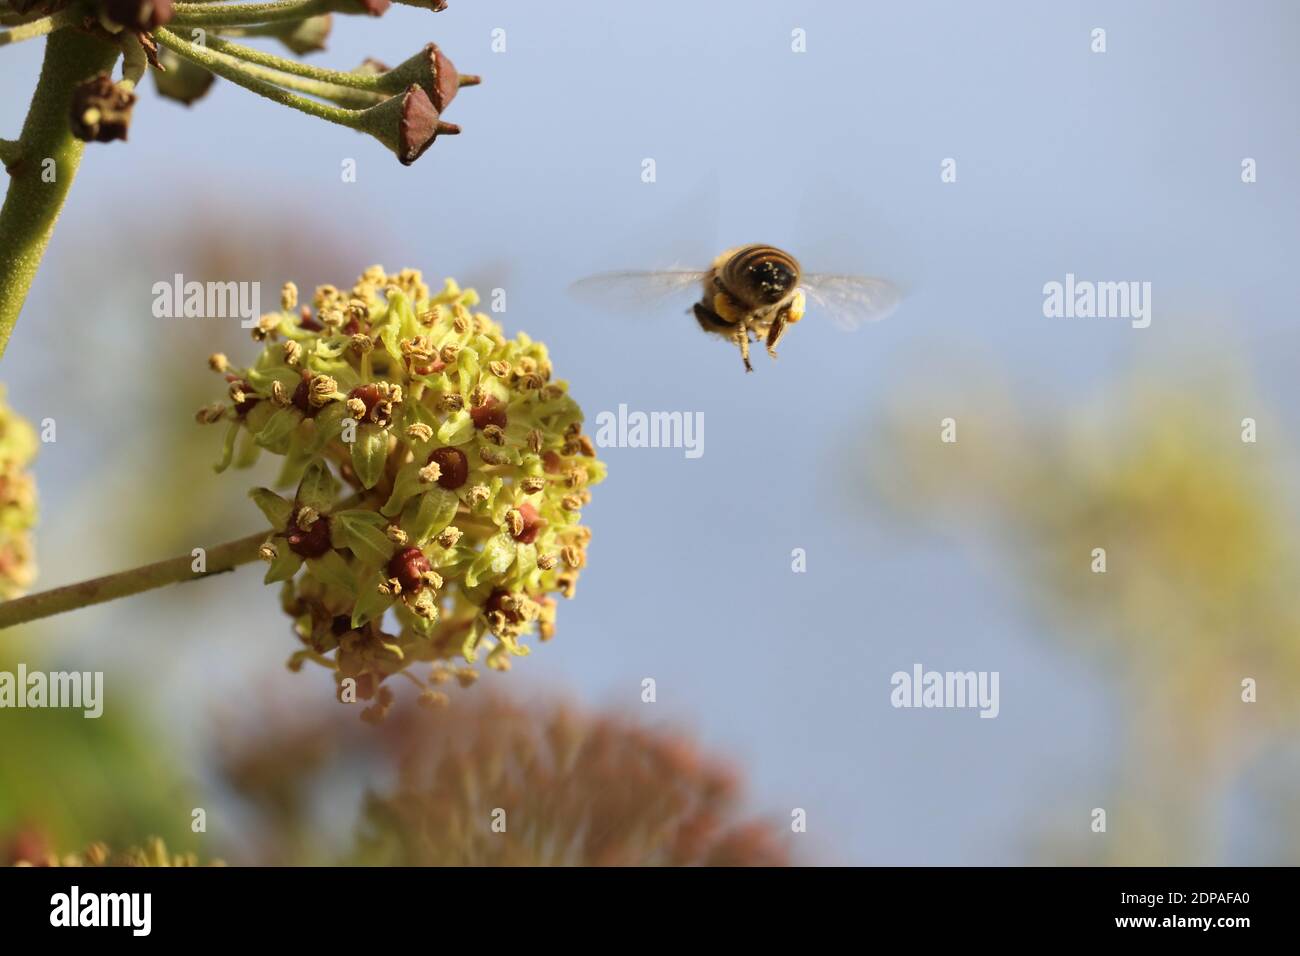 Eine Biene im Anflug auf eine Blütendolde des Efeu; der noch im November blühende Efeu ist eine wichtige und letzte natürliche Futterquelle Banque D'Images